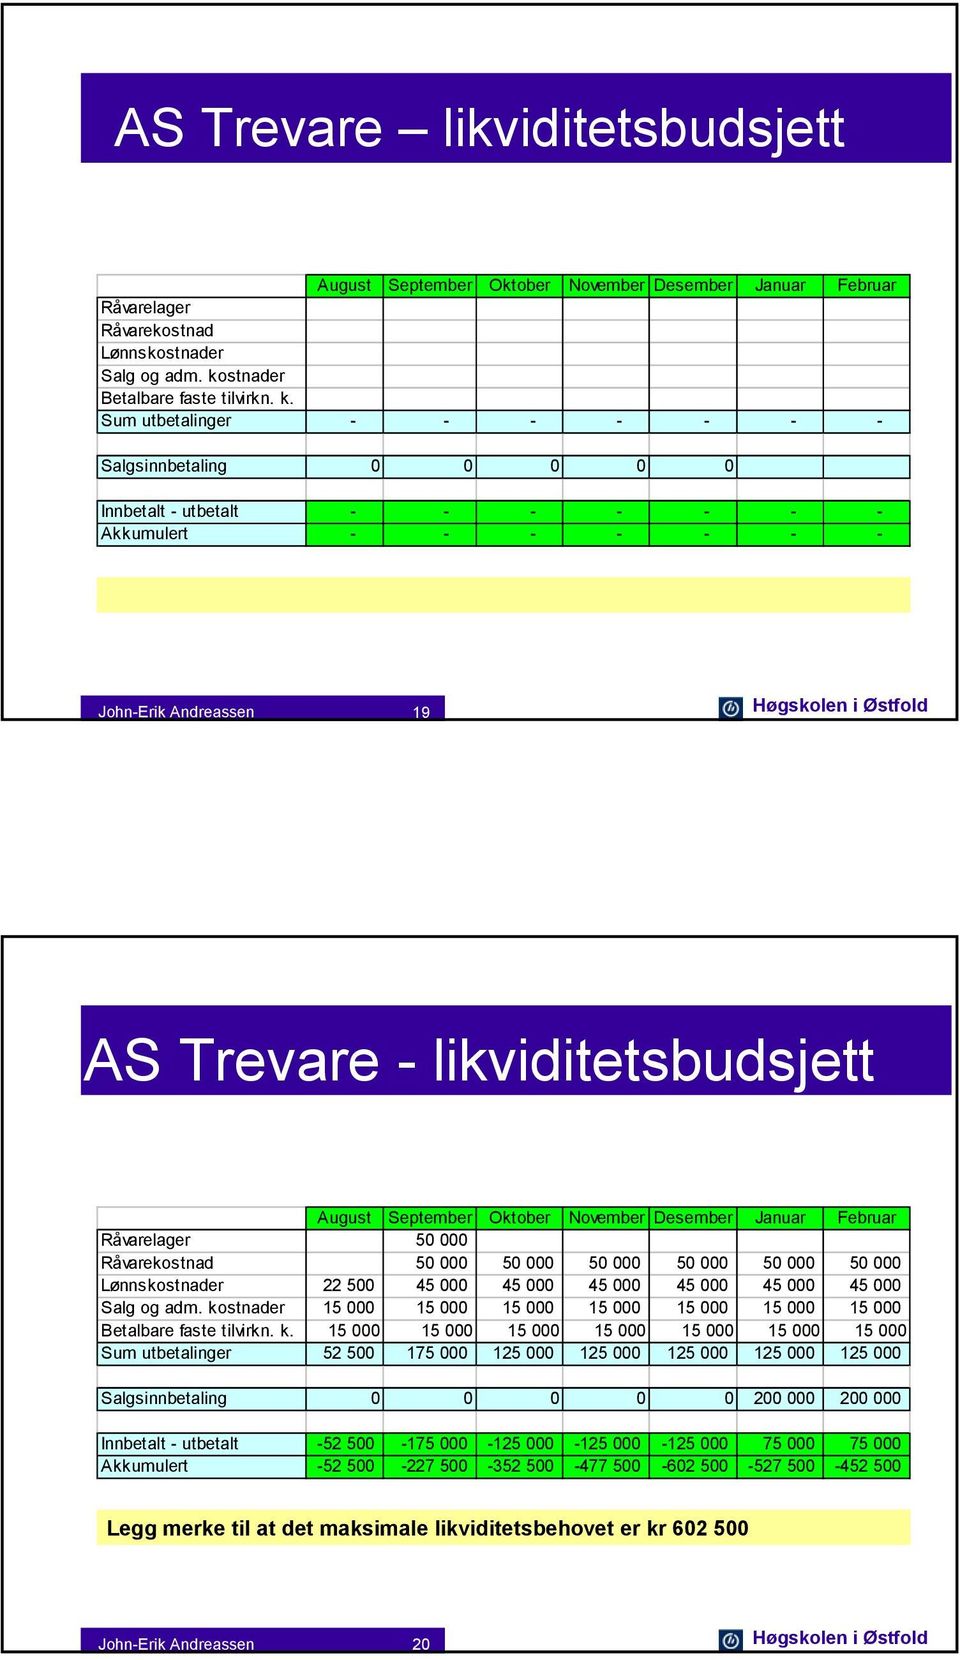 Sum utbetalinger - - - - - - - Salgsinnbetaling 0 0 0 0 0 Innbetalt - utbetalt - - - - - - - Akkumulert - - - - - - - John-Erik Andreassen 19 Høgskolen i Østfold AS Trevare - likviditetsbudsjett